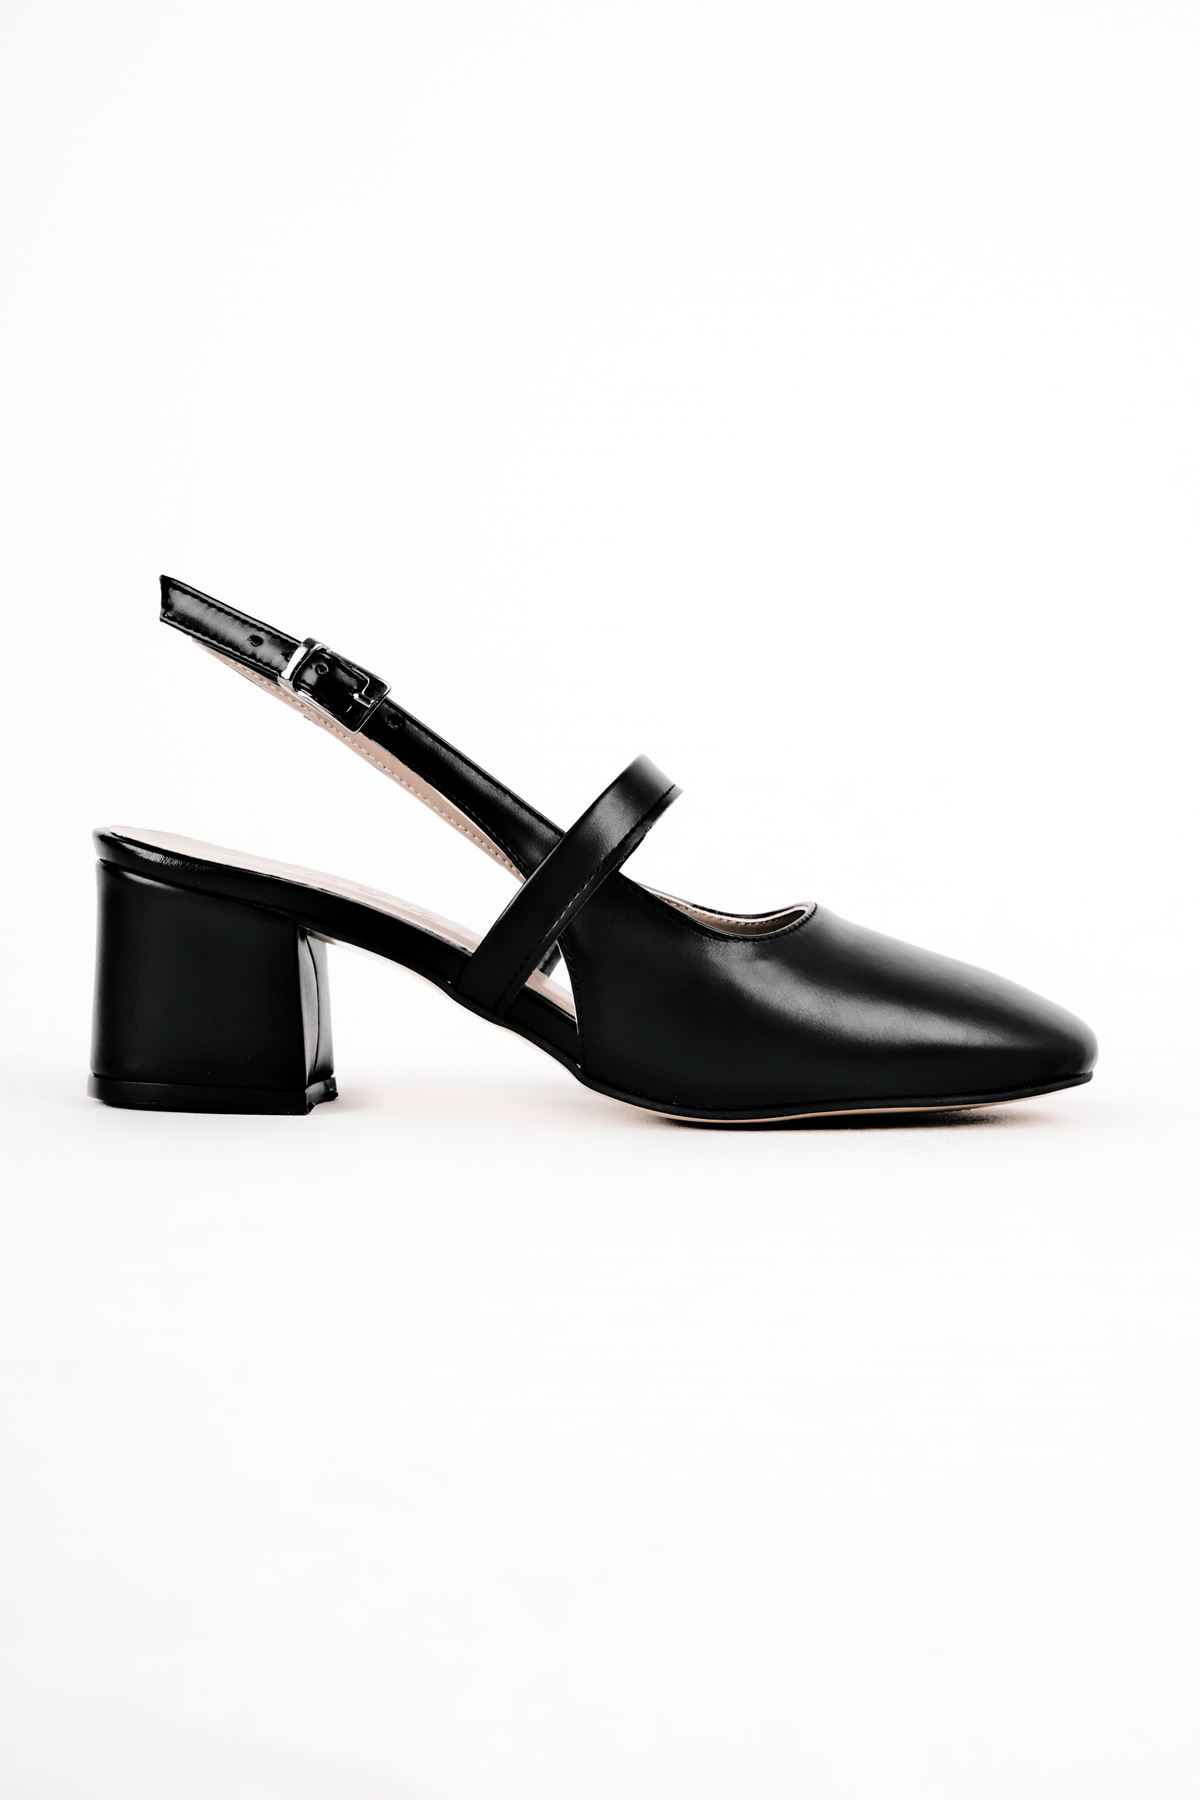 Biana Kadın Topuklu Ayakkabı Bant Detaylı-siyah